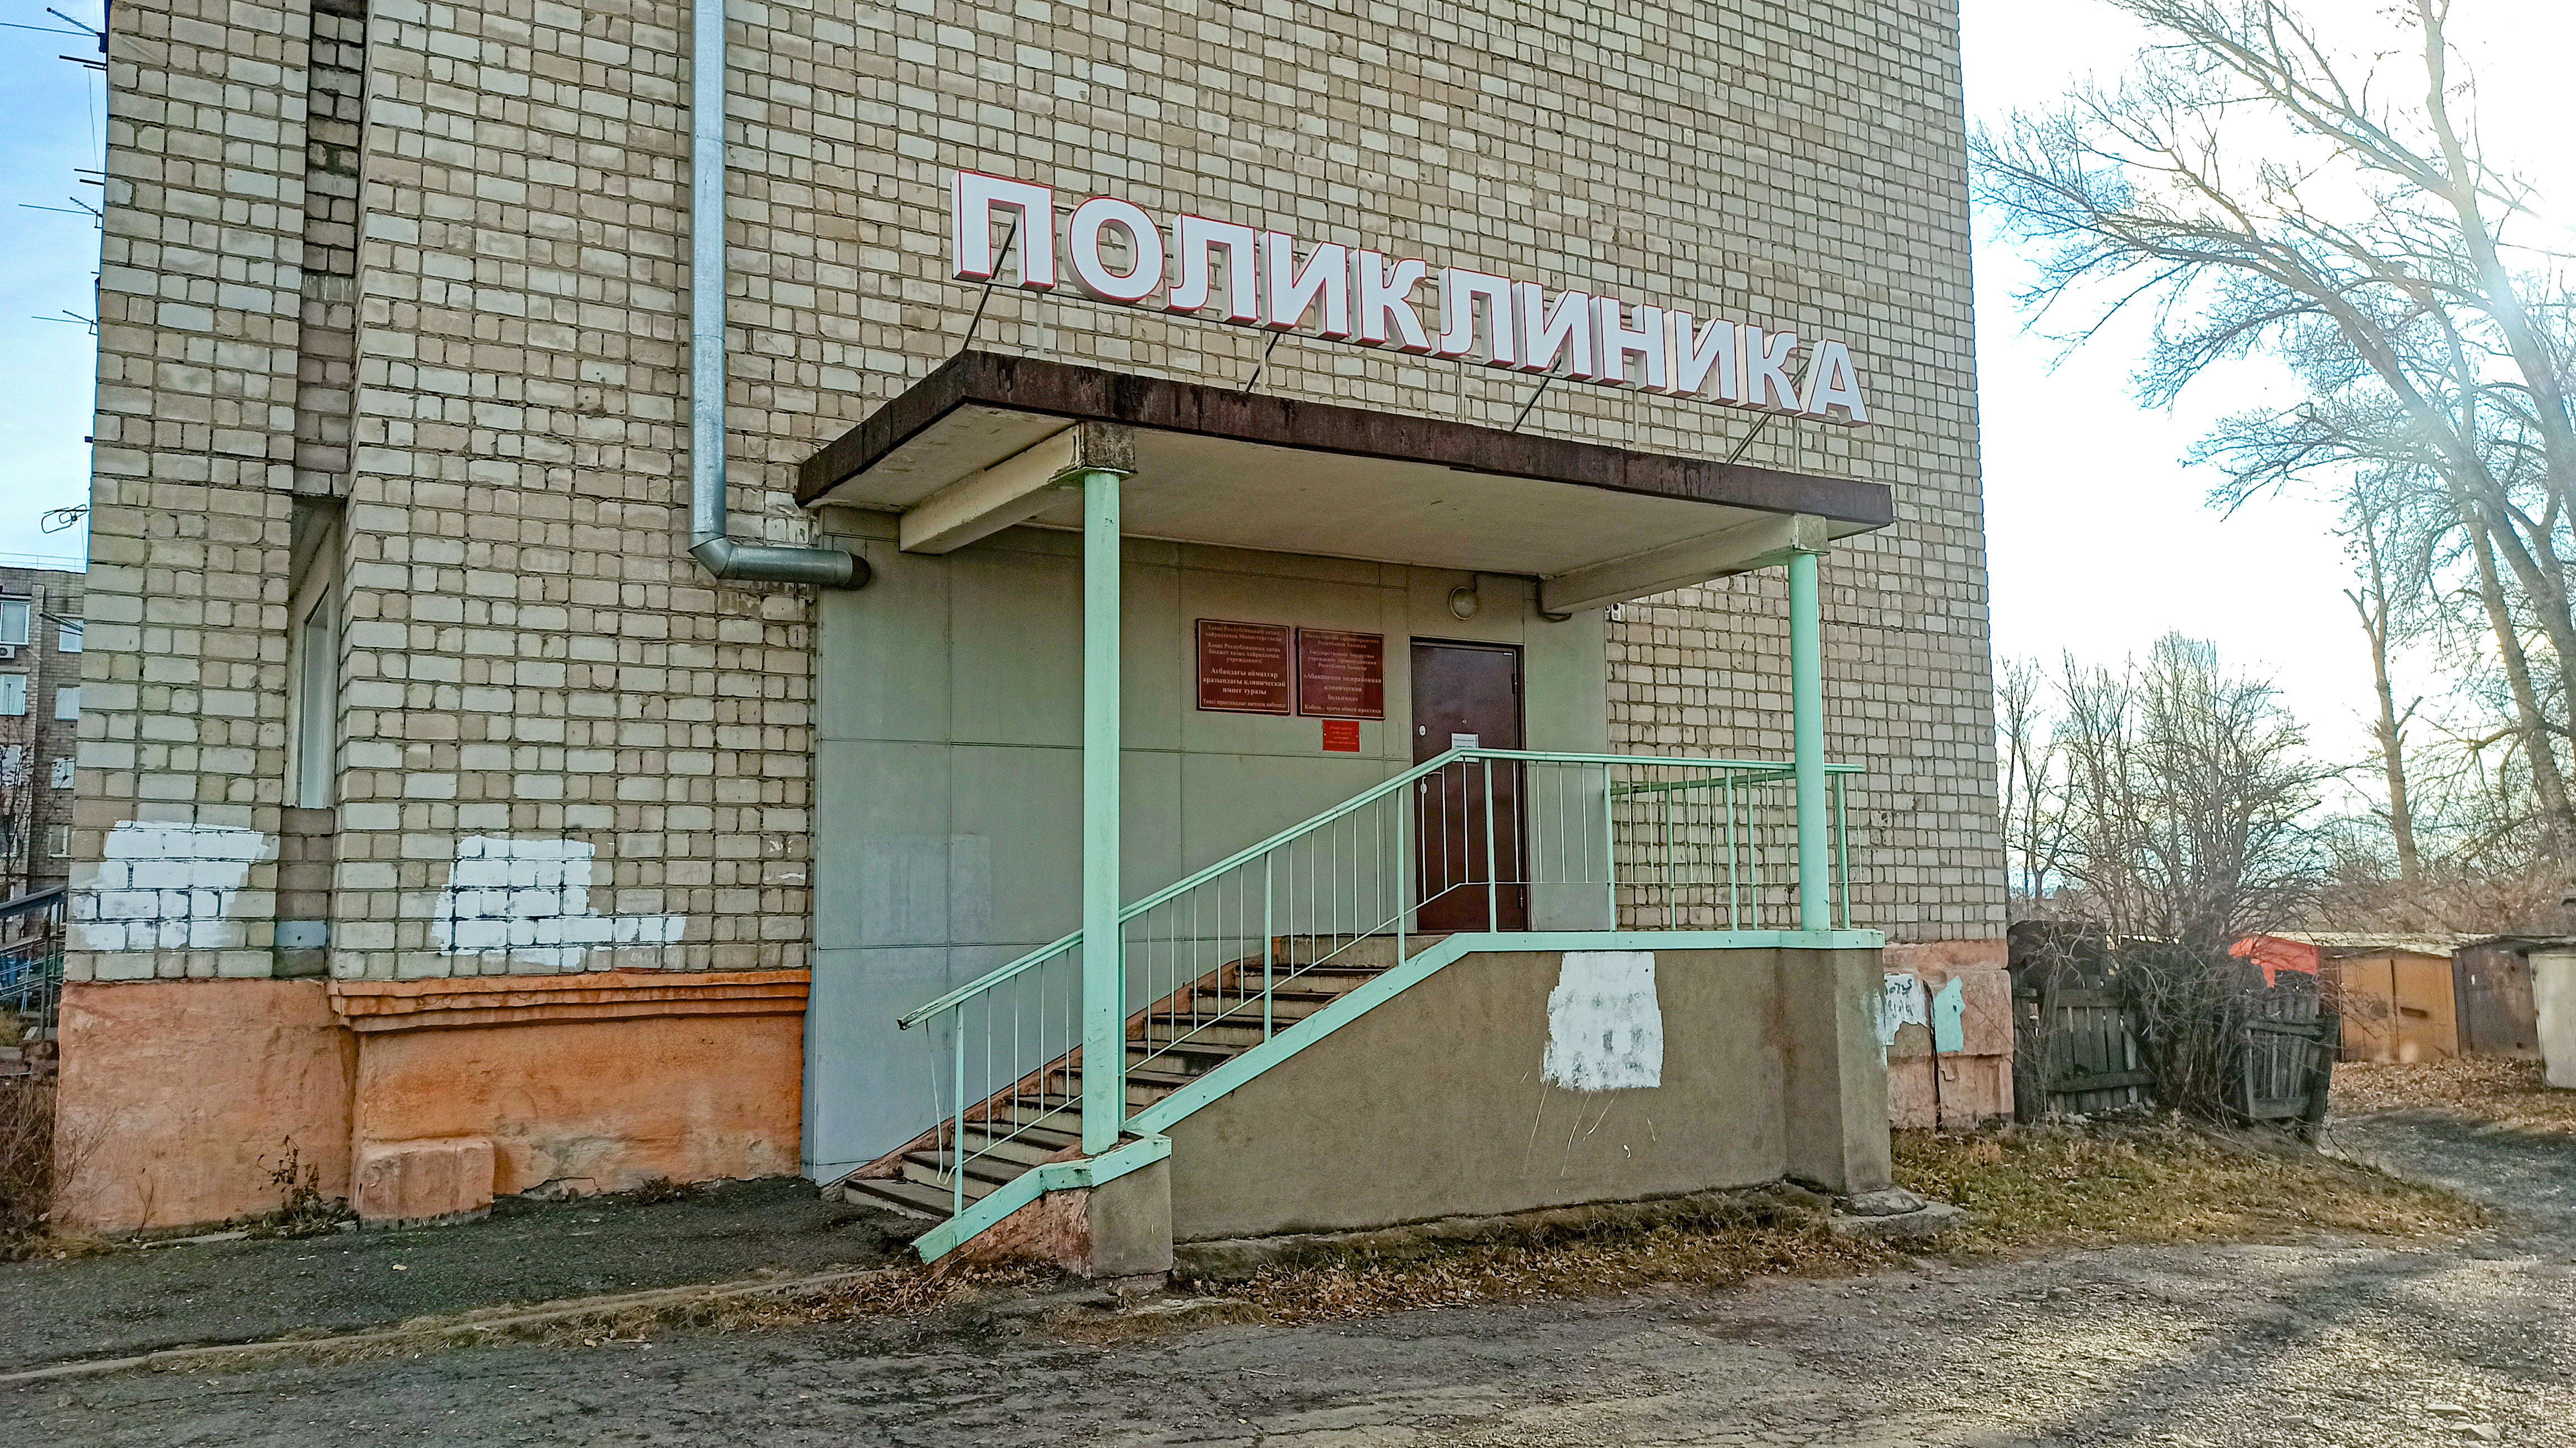 Поликлиника на Согринской в г. Абакан.